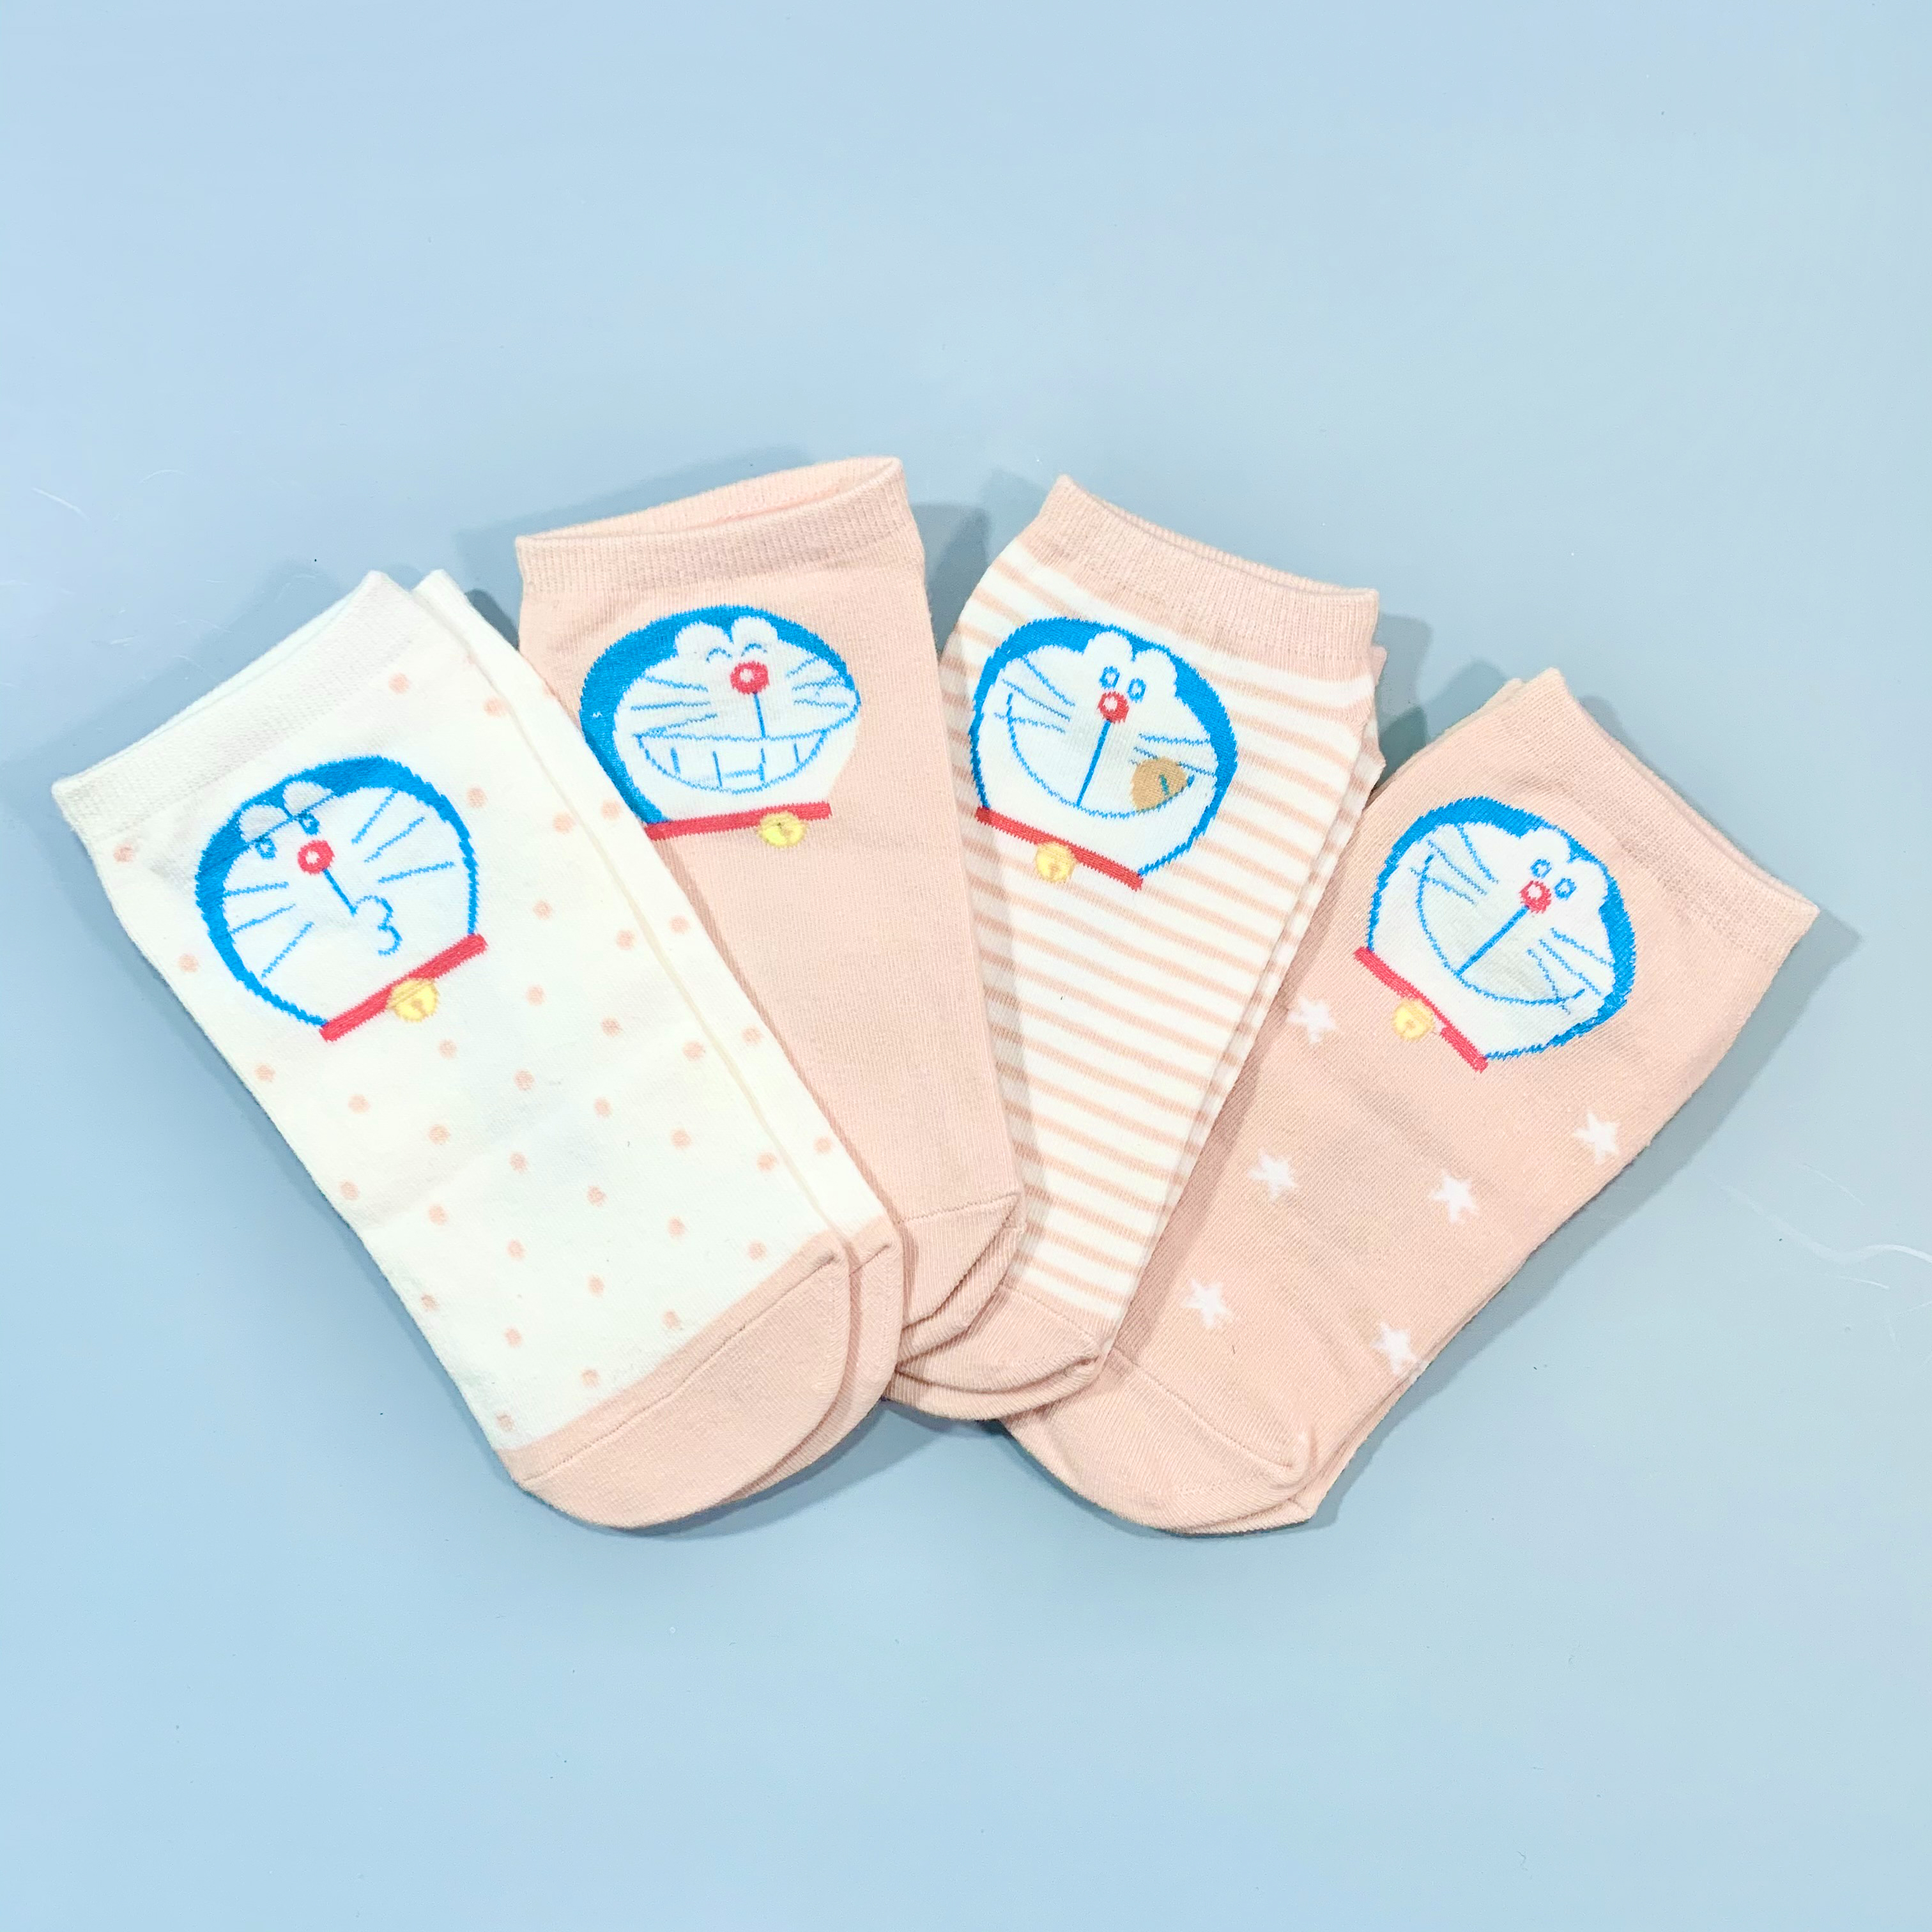 Set hộp 4 đôi tất nữ NICESOKS chất liệu cotton cao cấp, ngắn cổ thể thao, họa tiết Doraemon , hàng chính hãng NS5005FS